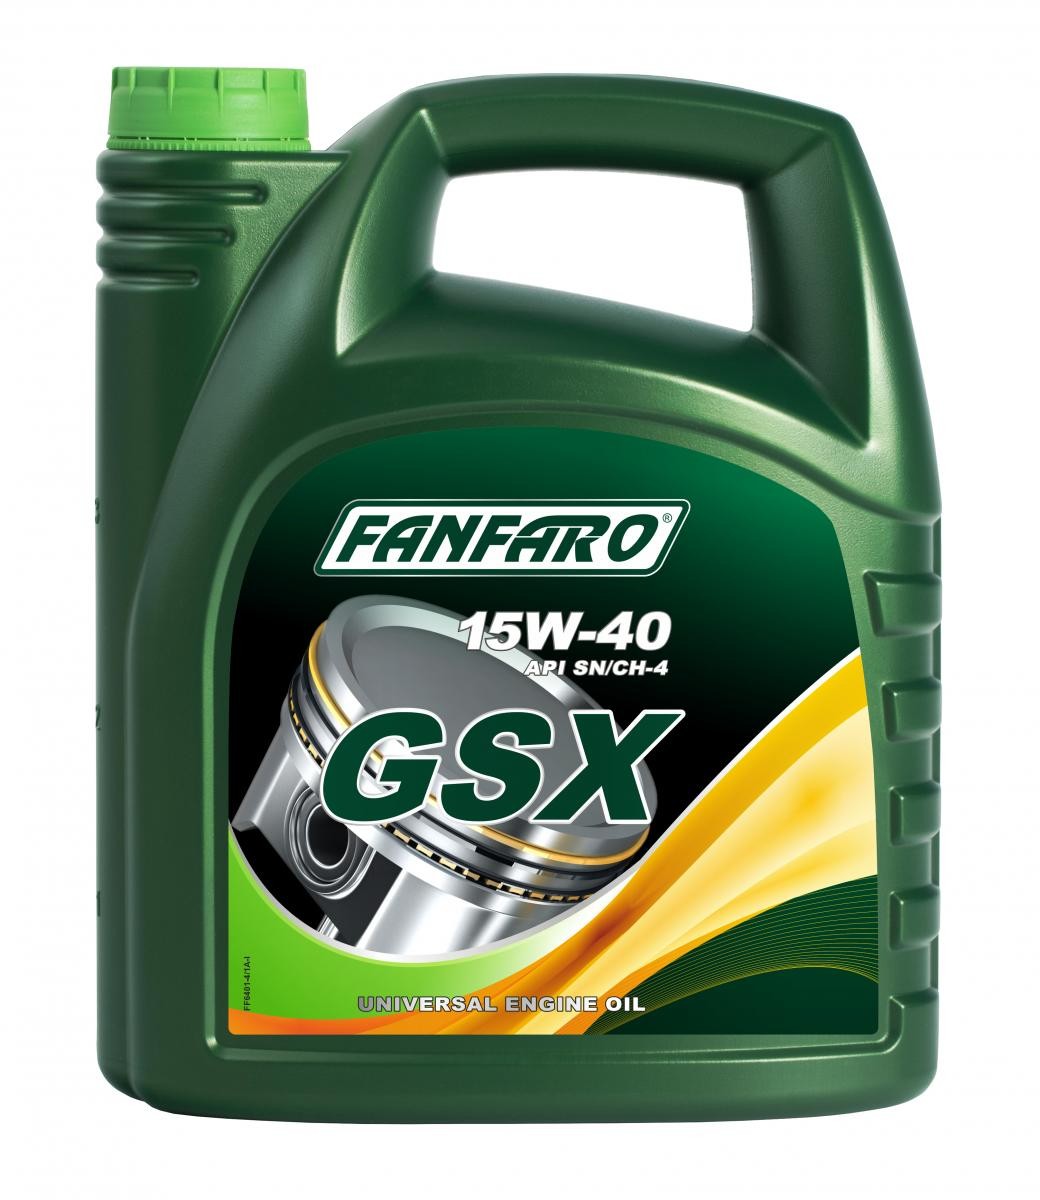 Car oil FANFARO 15W-40, 4l, Mineral Oil longlife FF6401-4